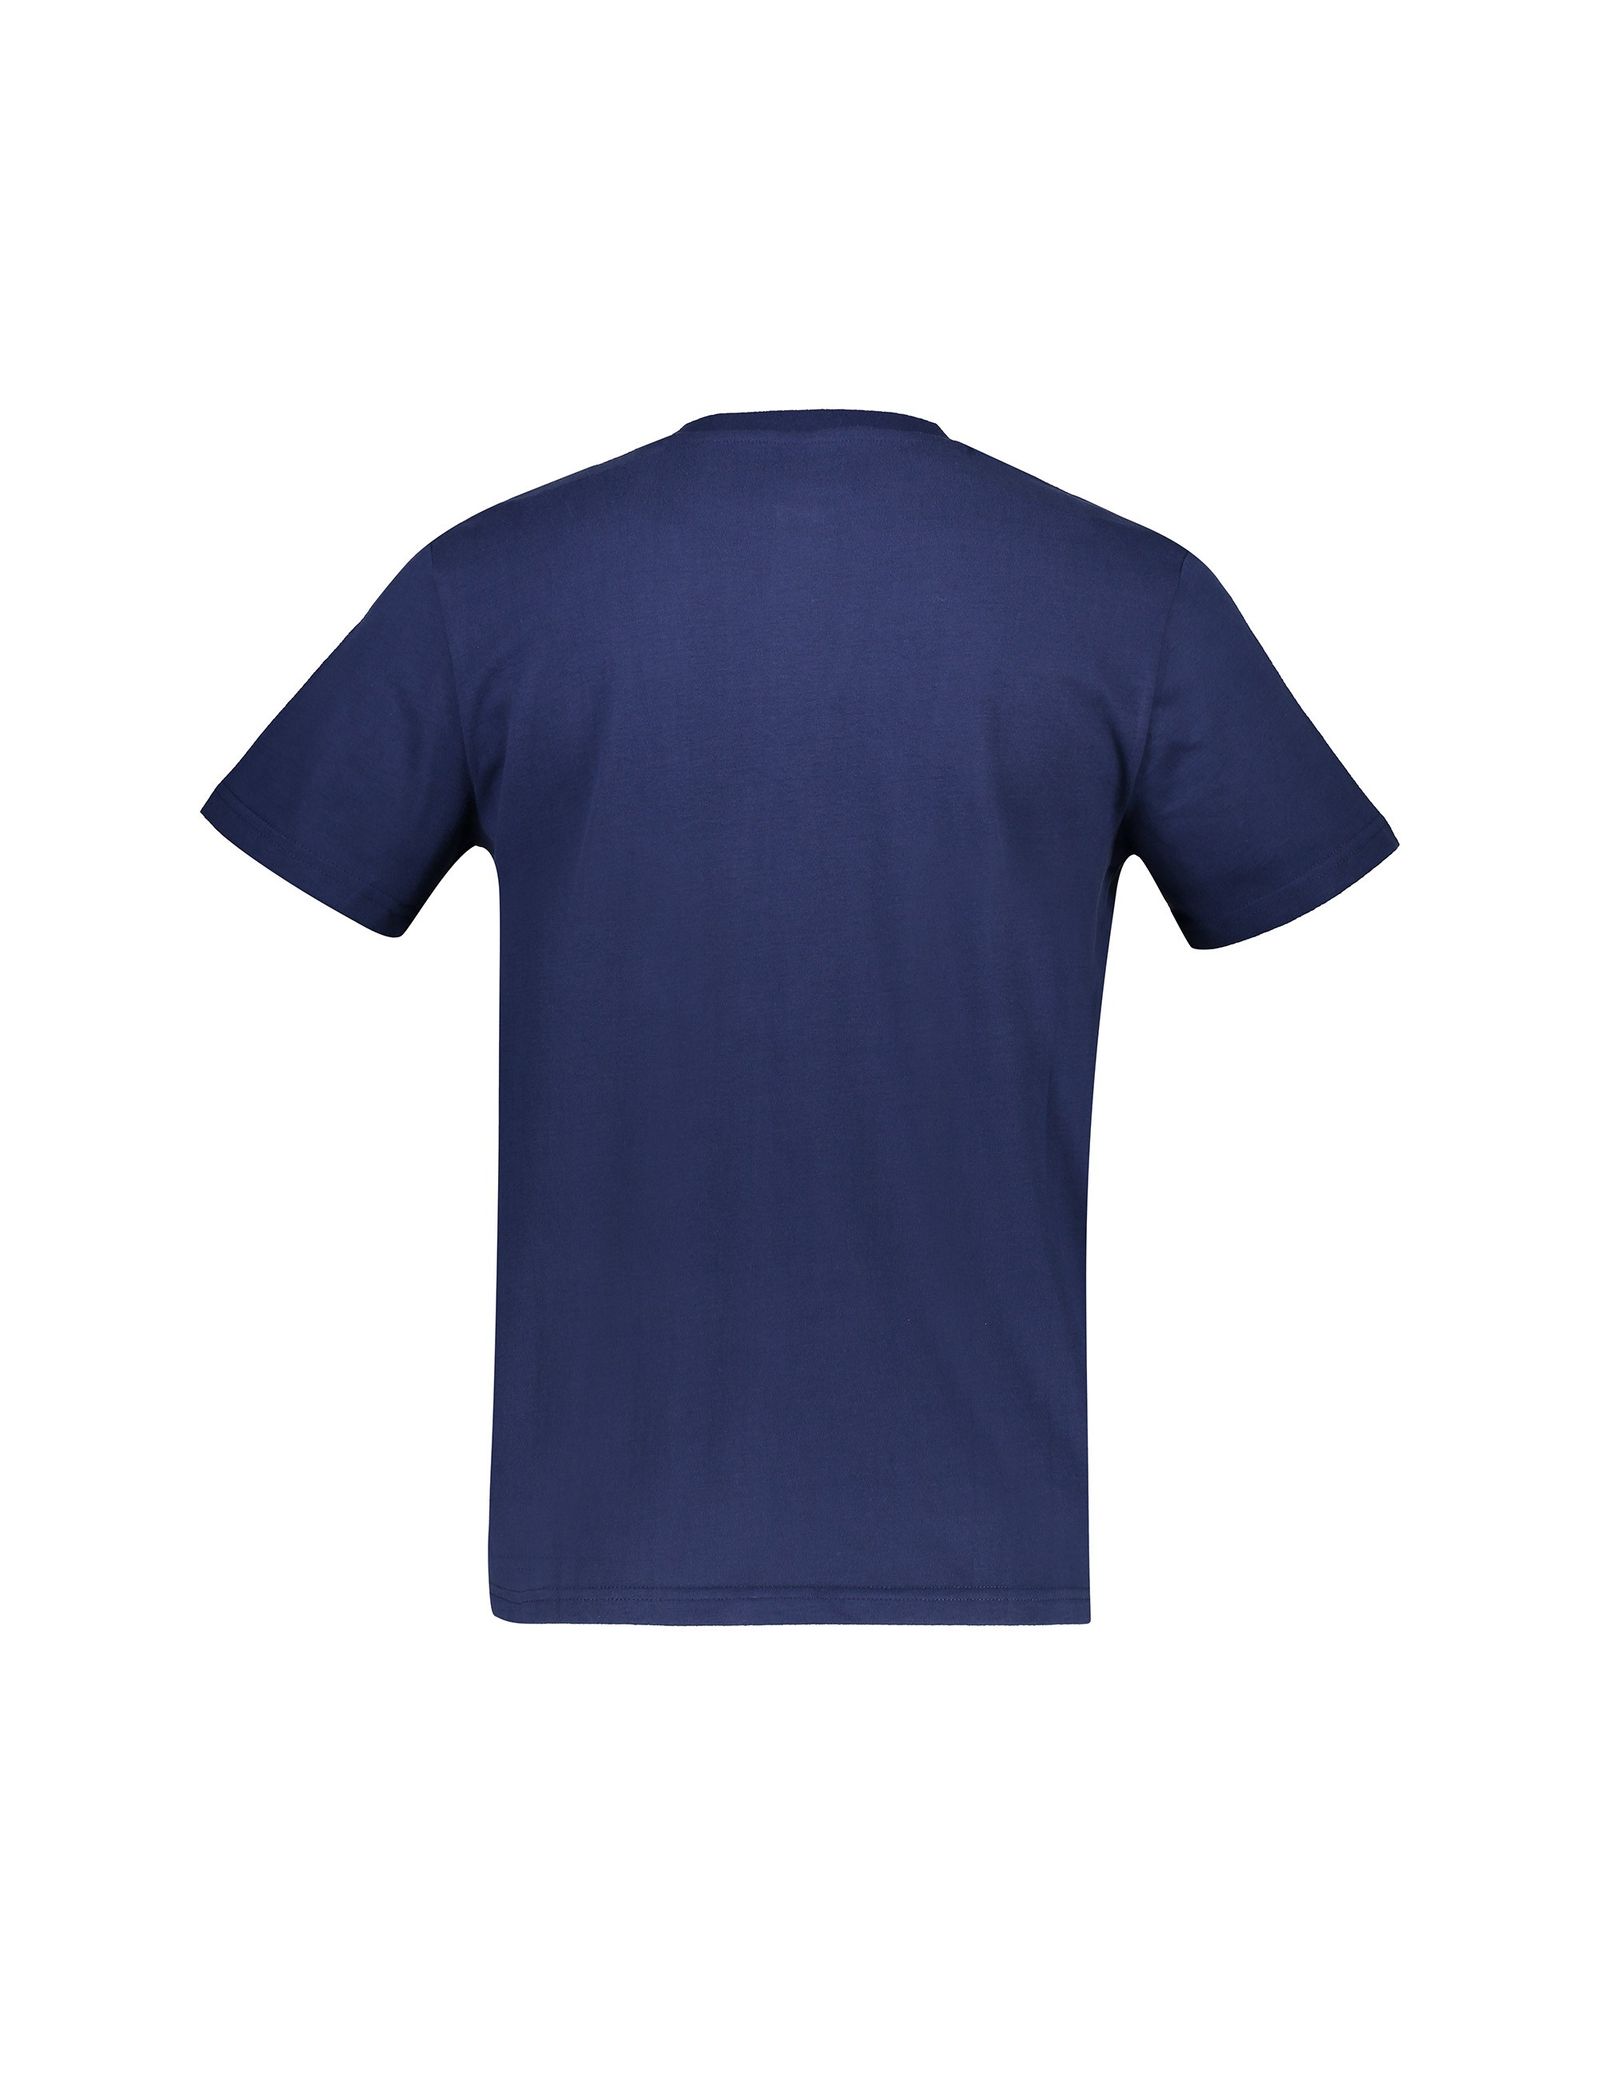 تی شرت و شلوارک راحتی نخی مردانه - مین نیو اینگلند - سرمه اي       - 4